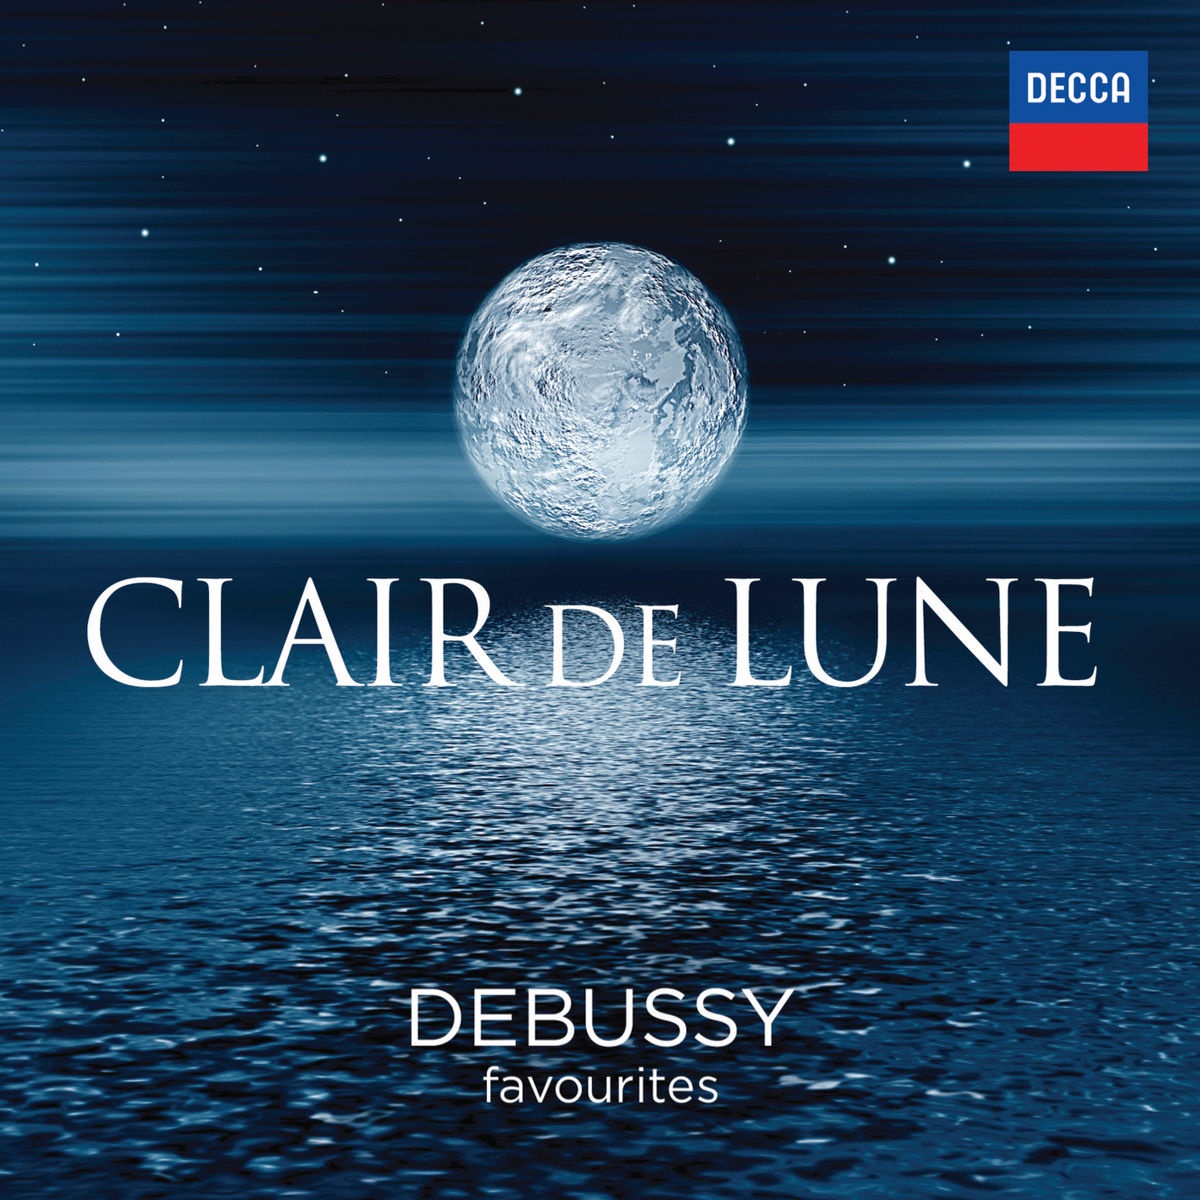 Debussy: Pre ludes  Book 1  10. La cathe drale engloutie